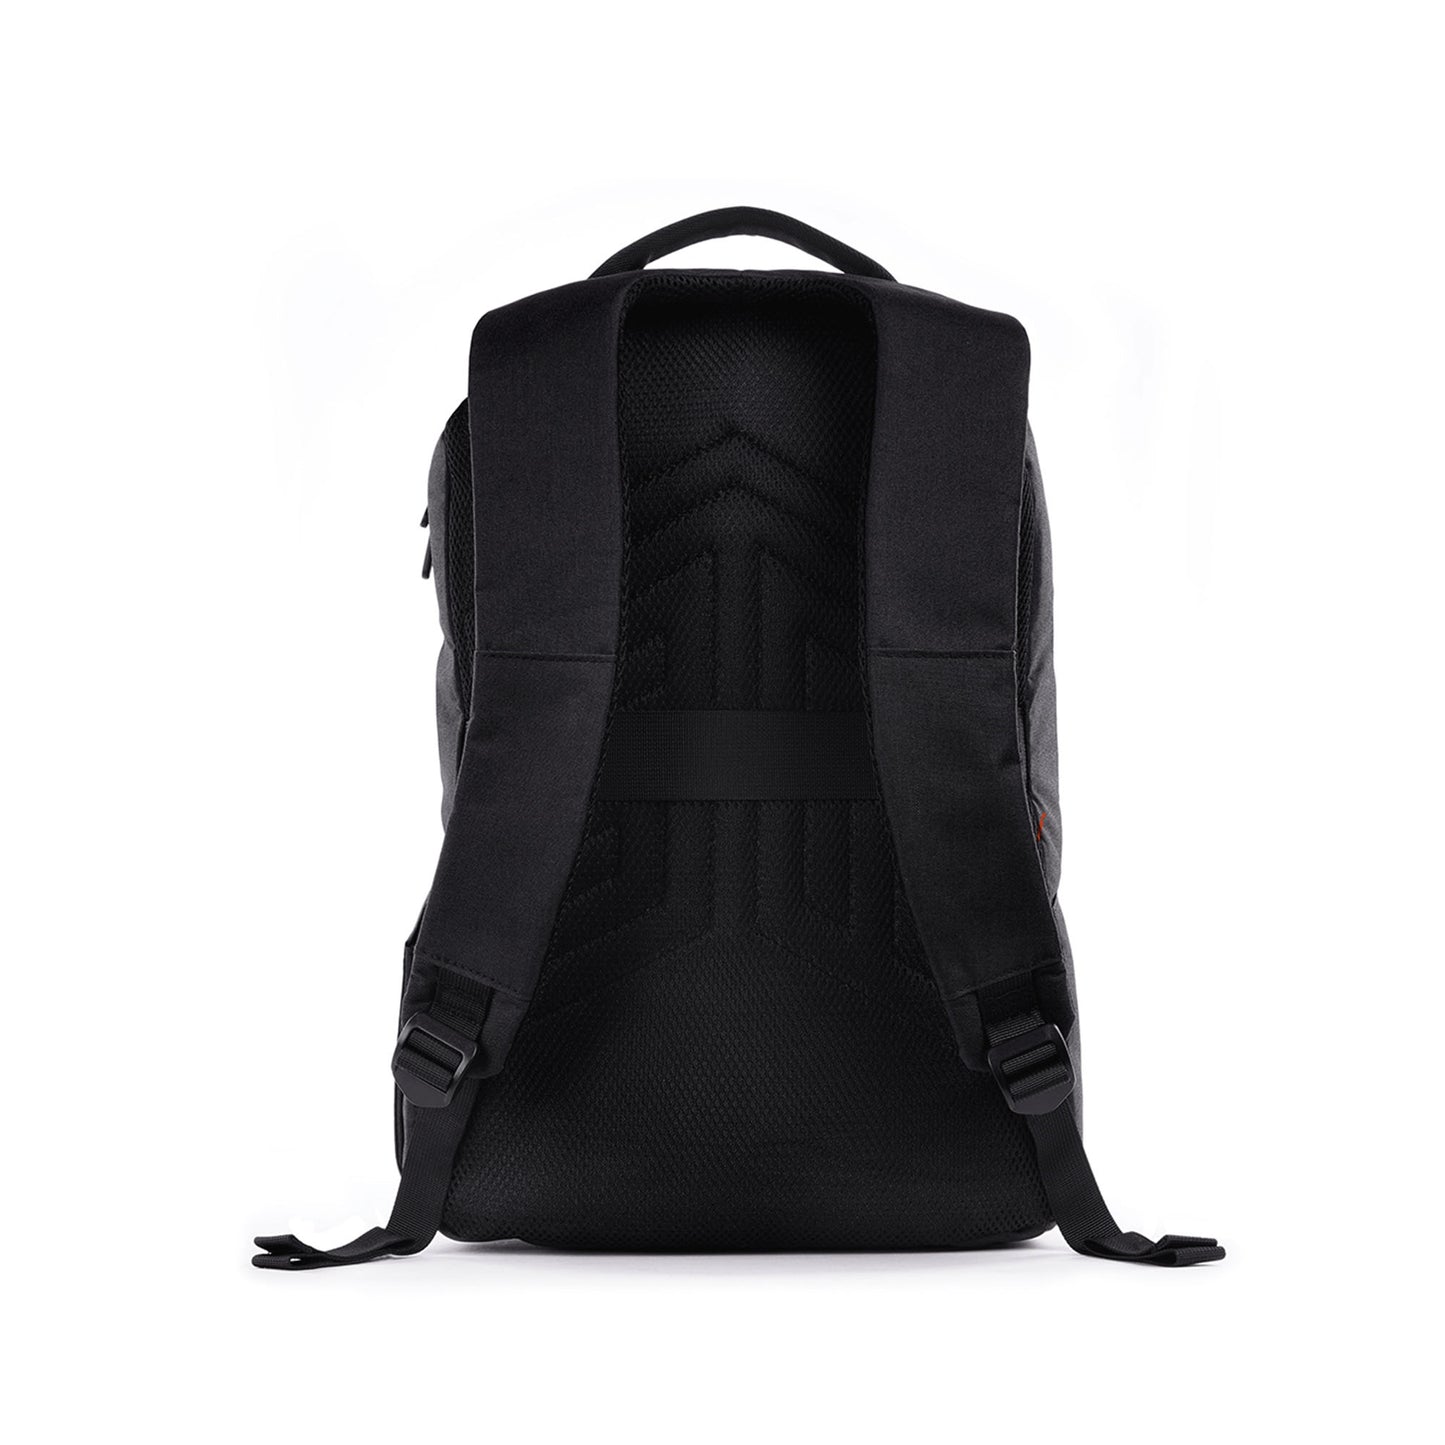 STM Gamechange Backpack ( 15 inch ) - Laptop Backpack - Black (Barcode: 765951764691 )